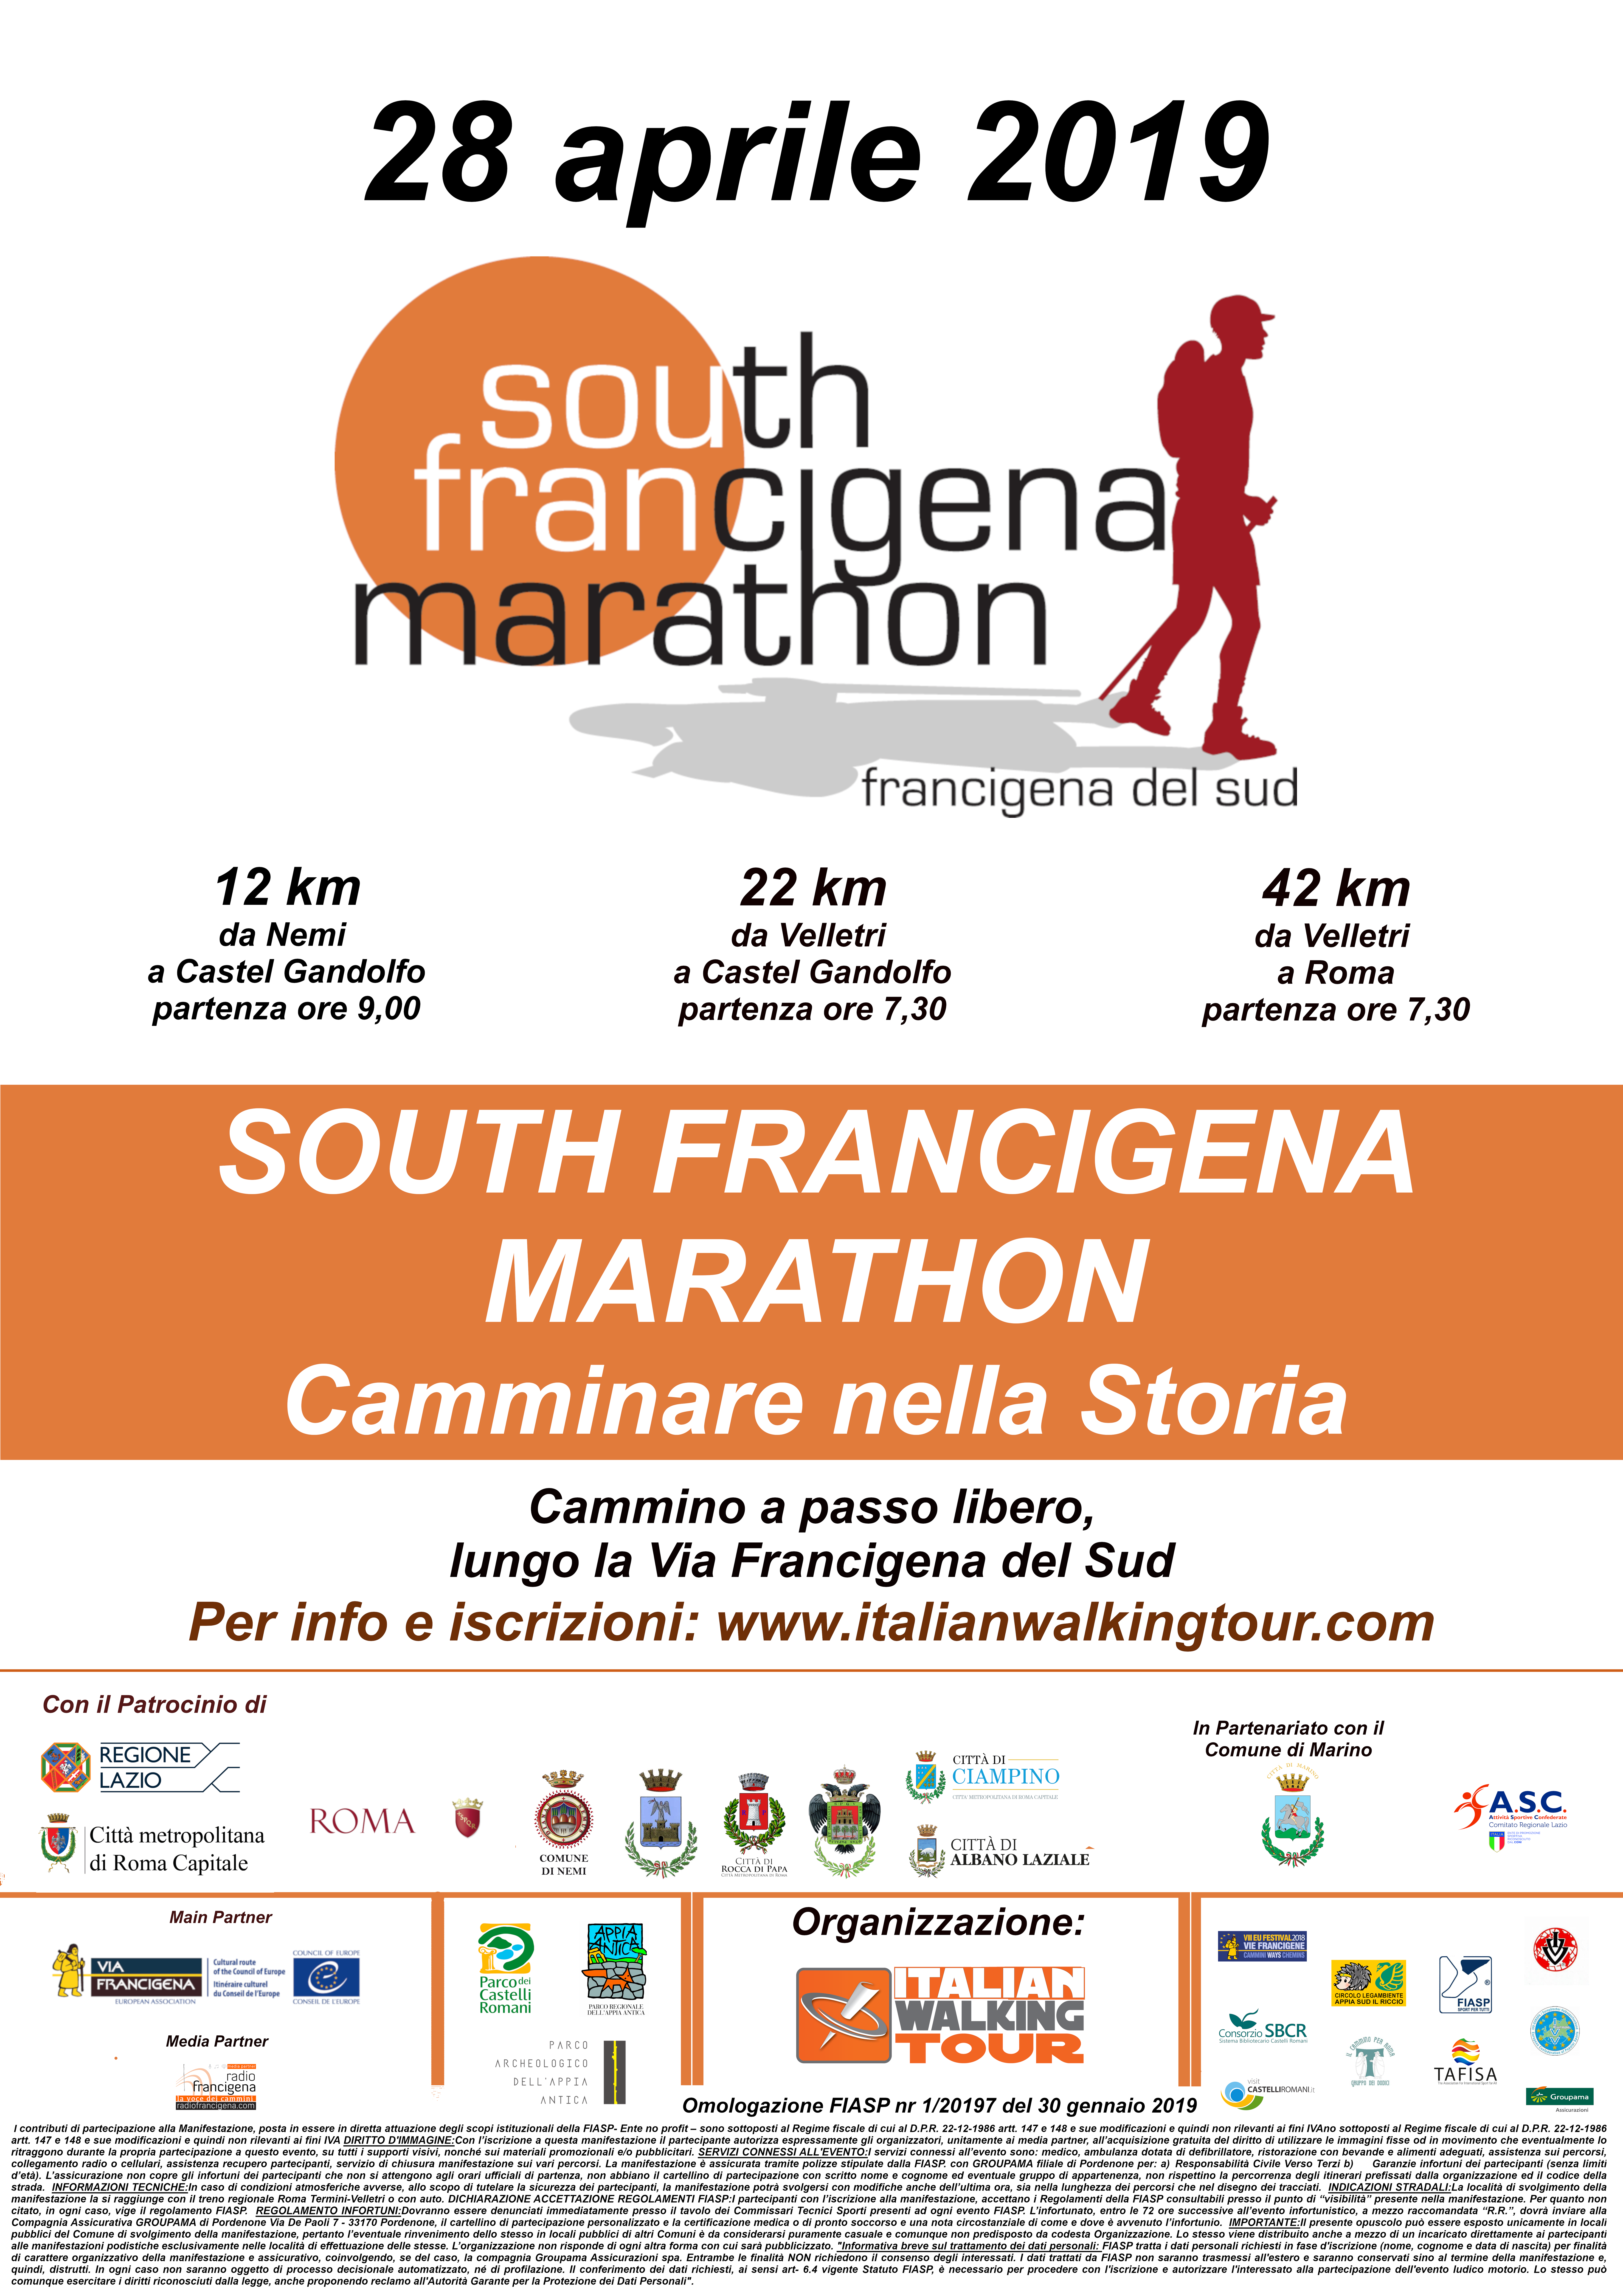 Presentata la prima edizione della South Francigena Marathon